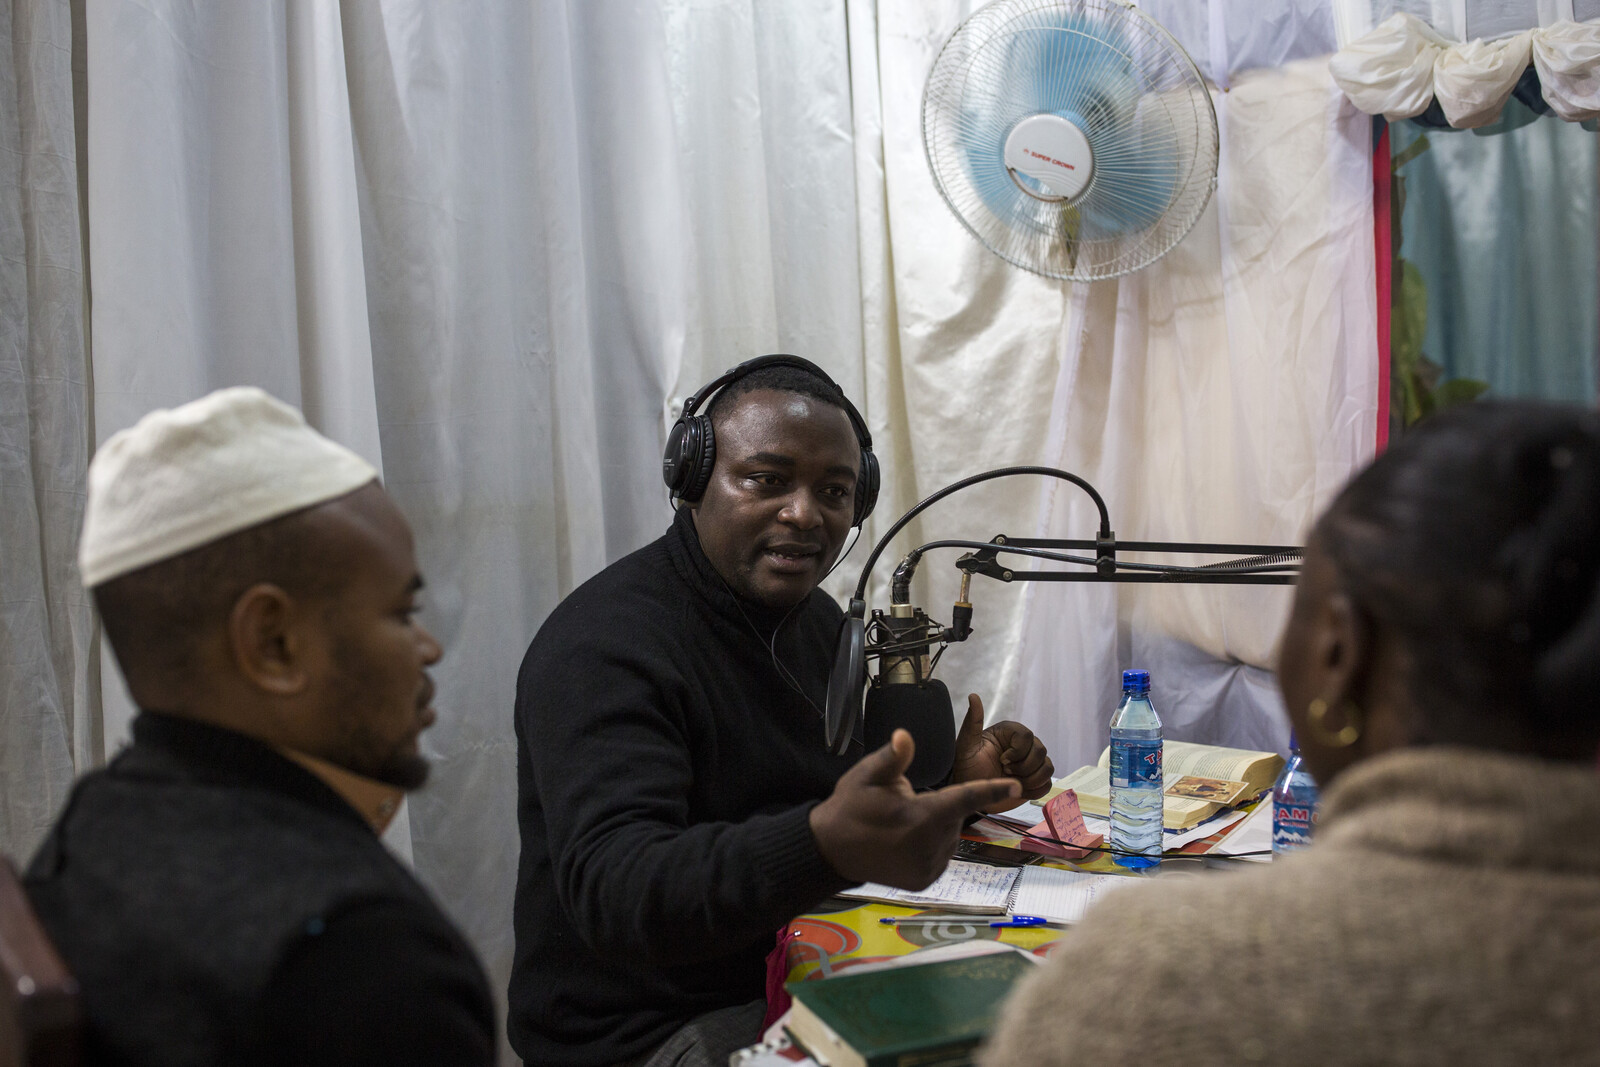 Priester klären in einer Radioshow über Ebola auf